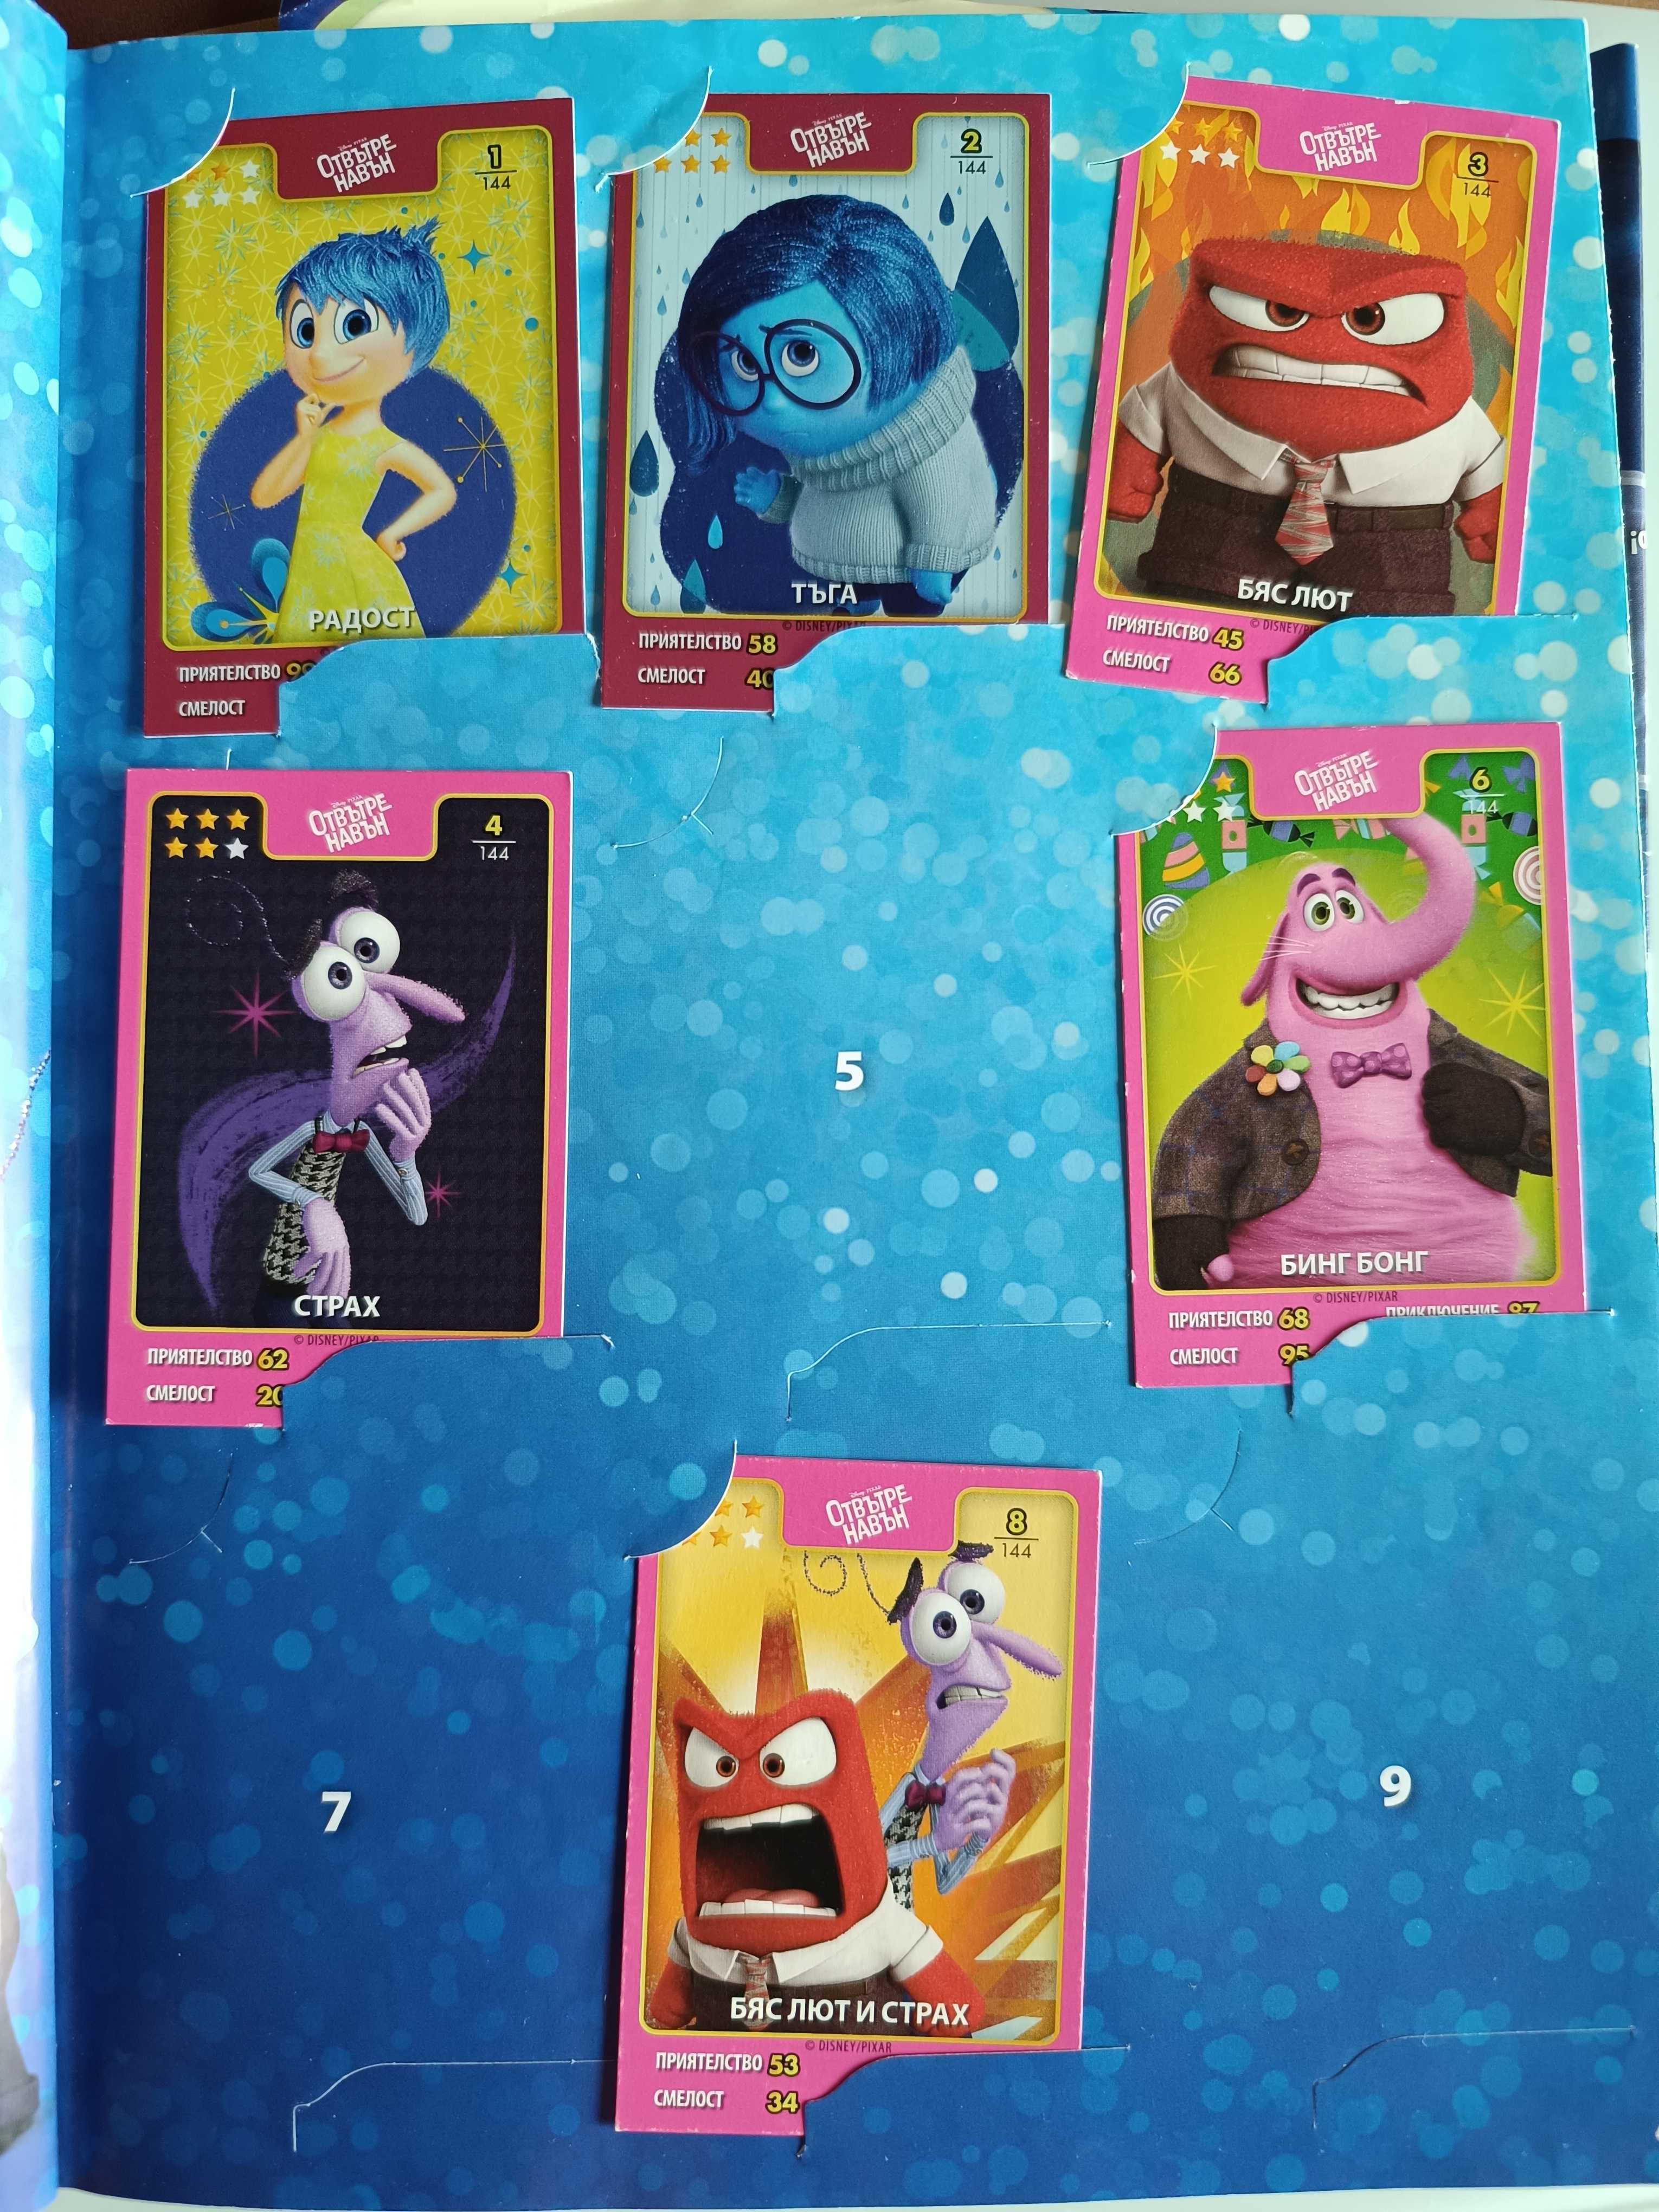 Албумче за картите на Звездите на Disney Pixar с 64 карти в него